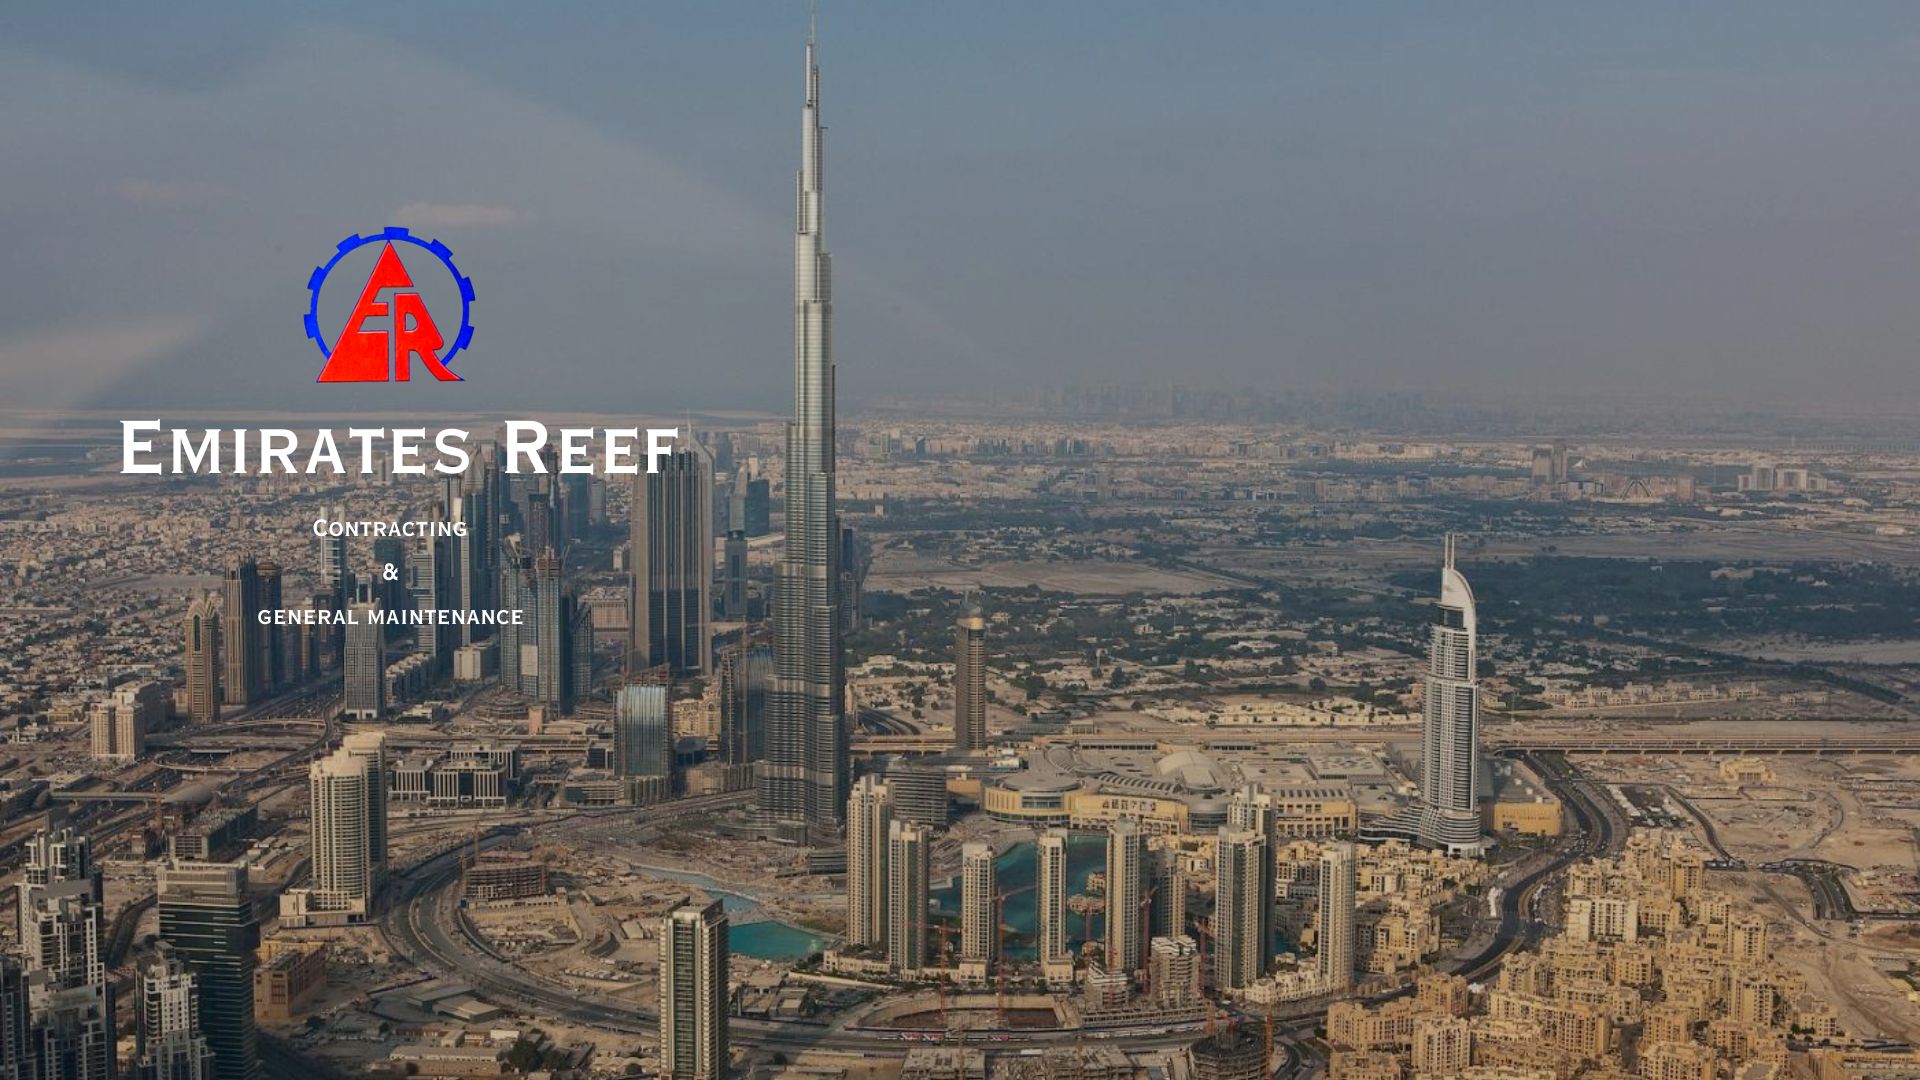 Emirates Reef